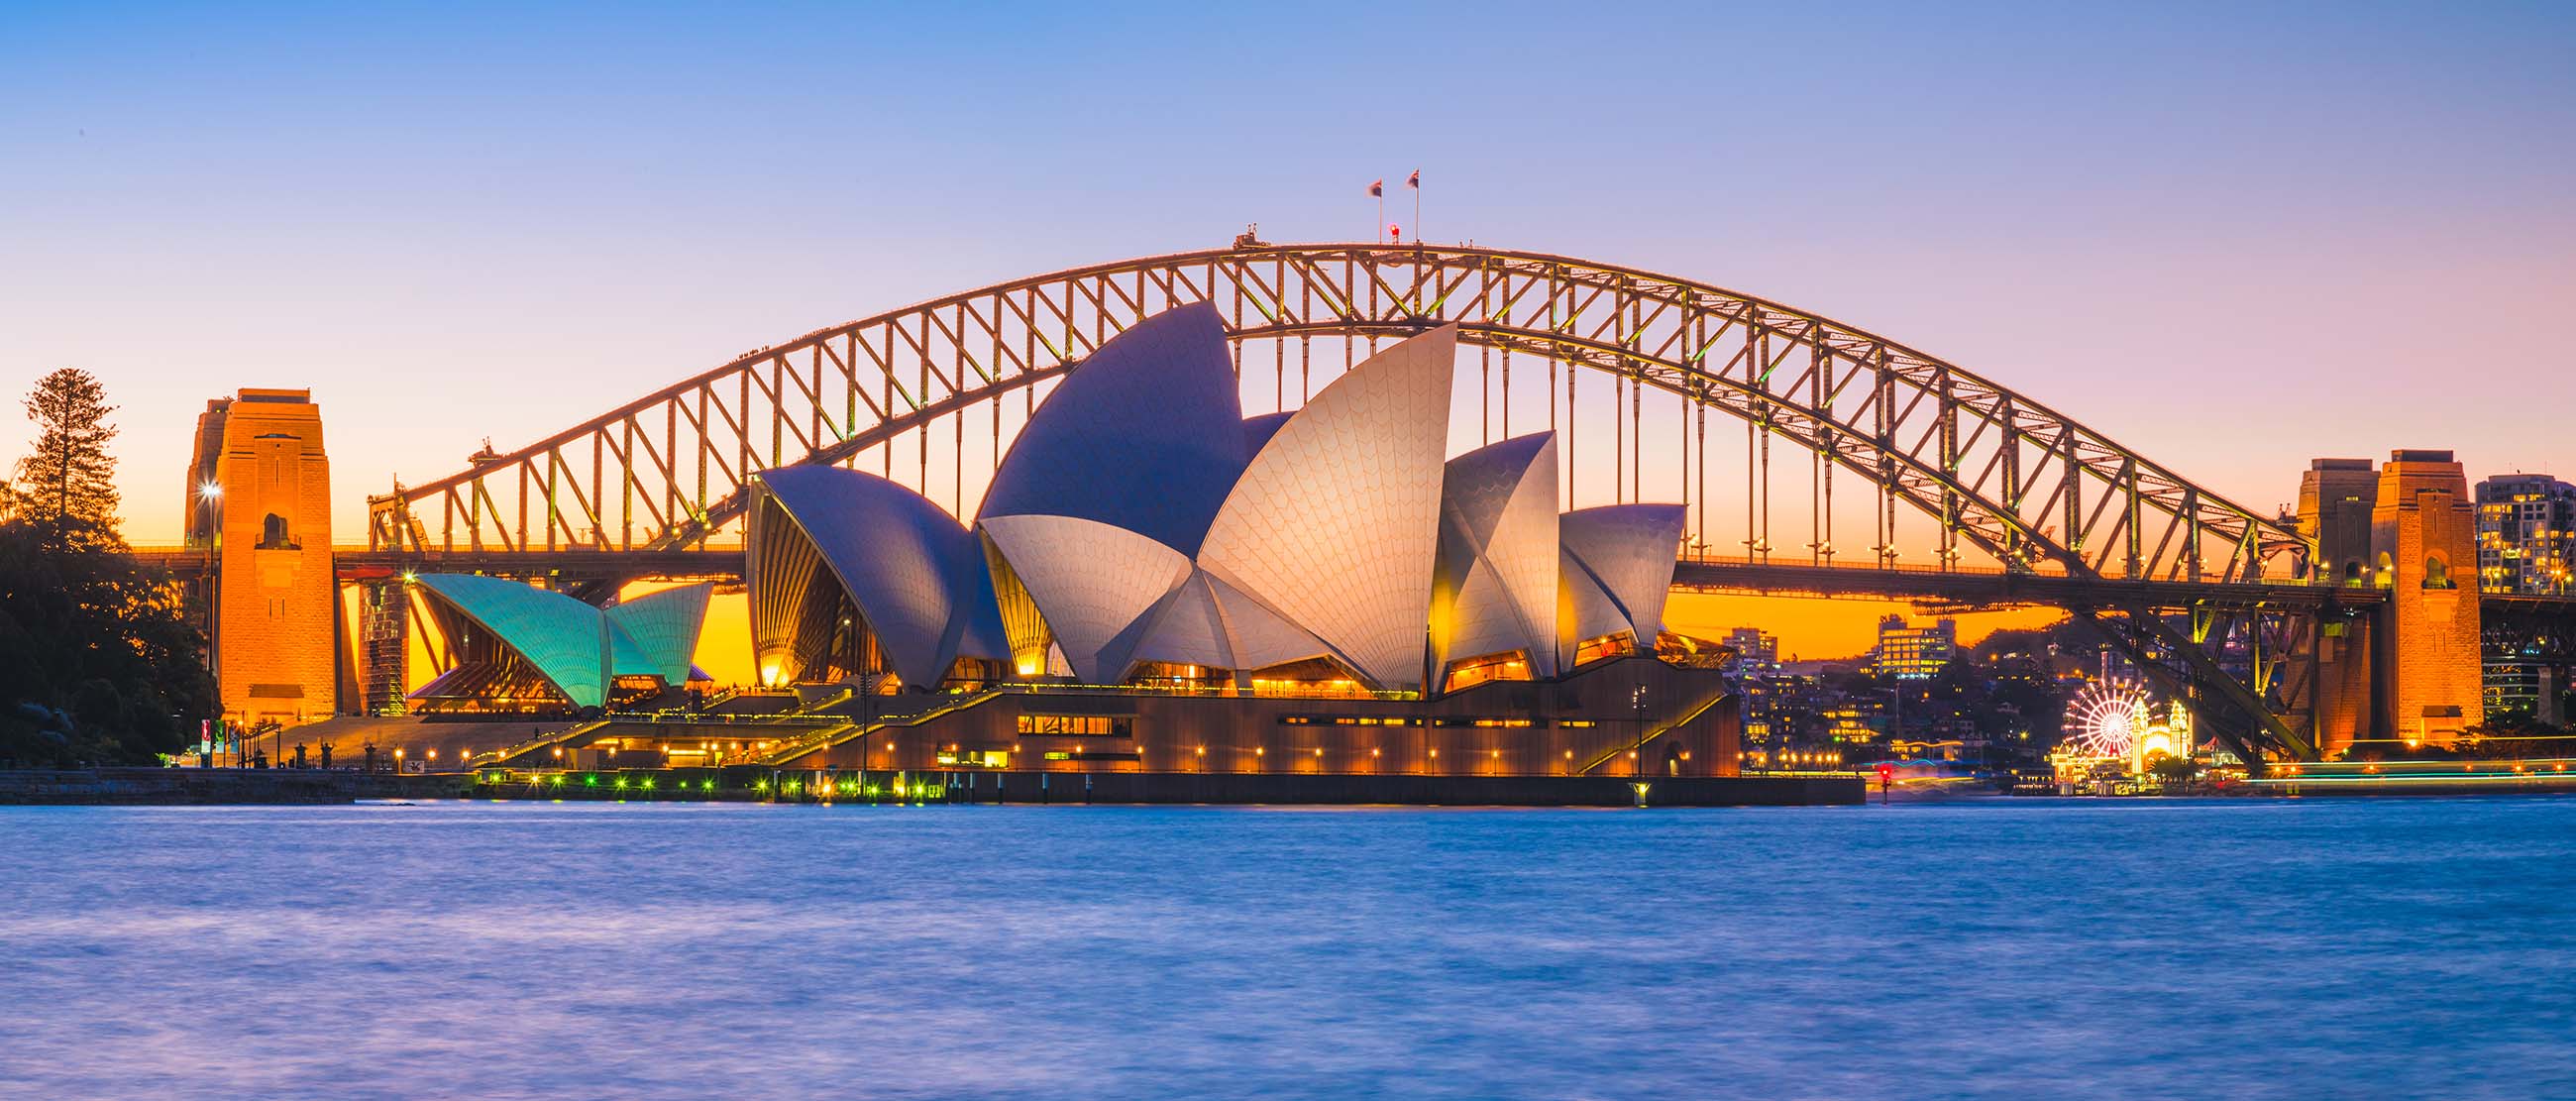 Nhà hát Sydney Opera House - biểu tượng đặc trưng của nước Úc